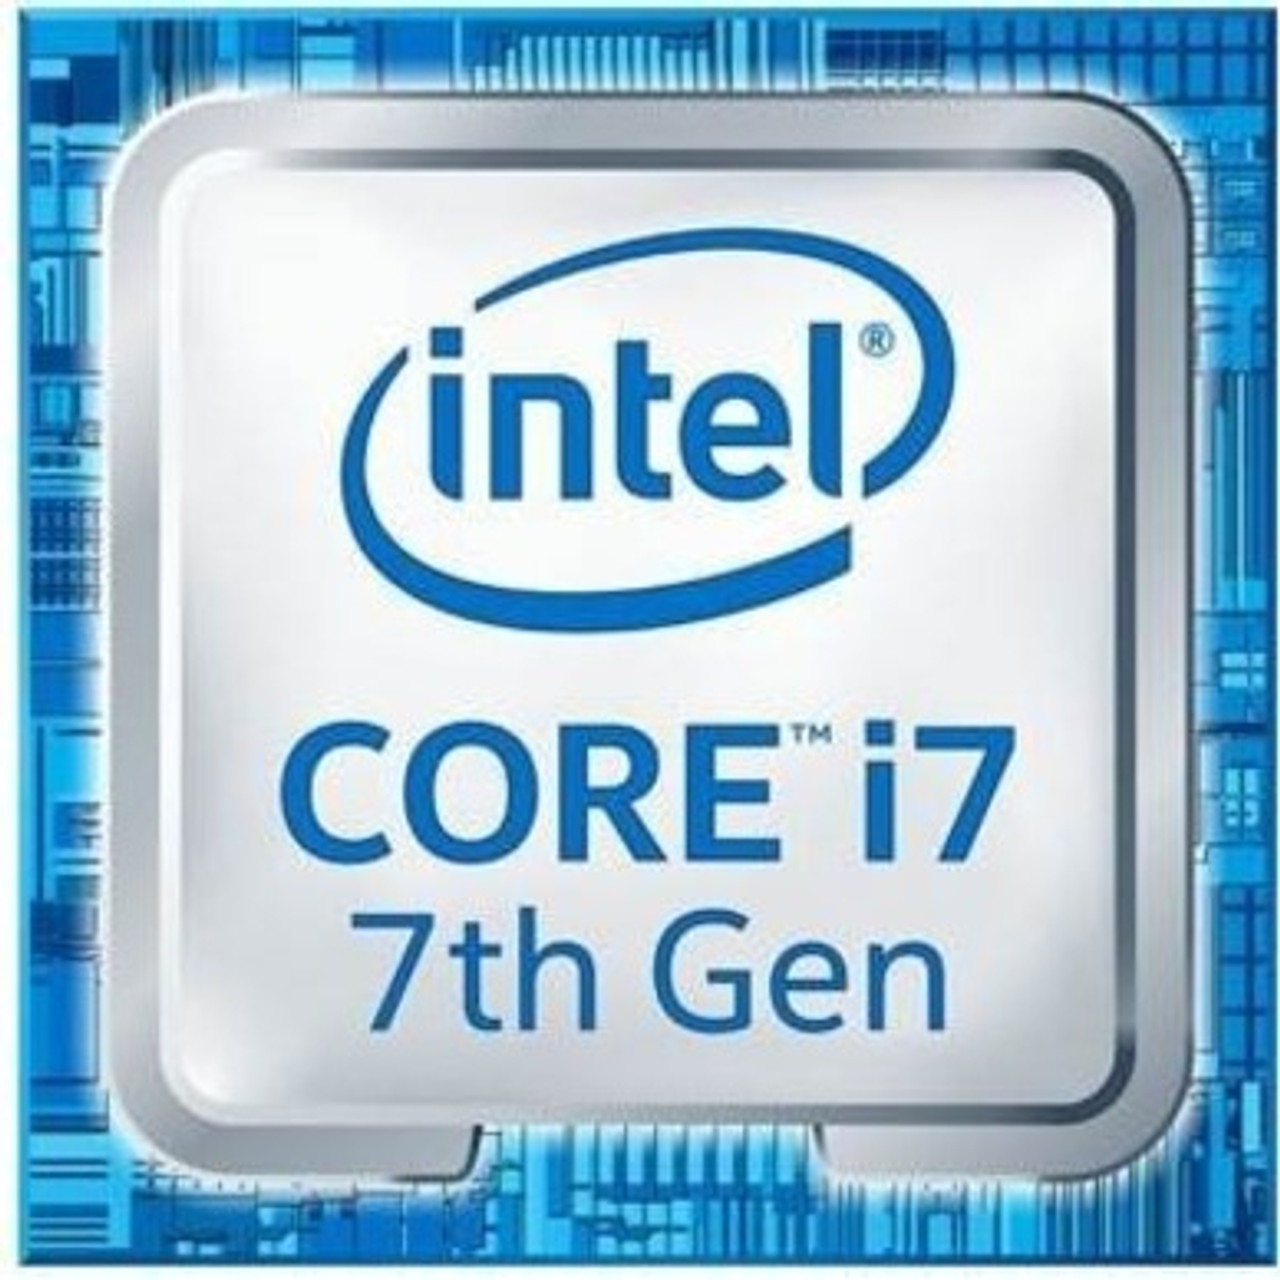 Intel Core i7 i7-7700 Quad-core (4 Core) 3.60 GHz Processor - Socket H4 LGA-1151 OEM Pack-Tray Packaging - CM8067702868314